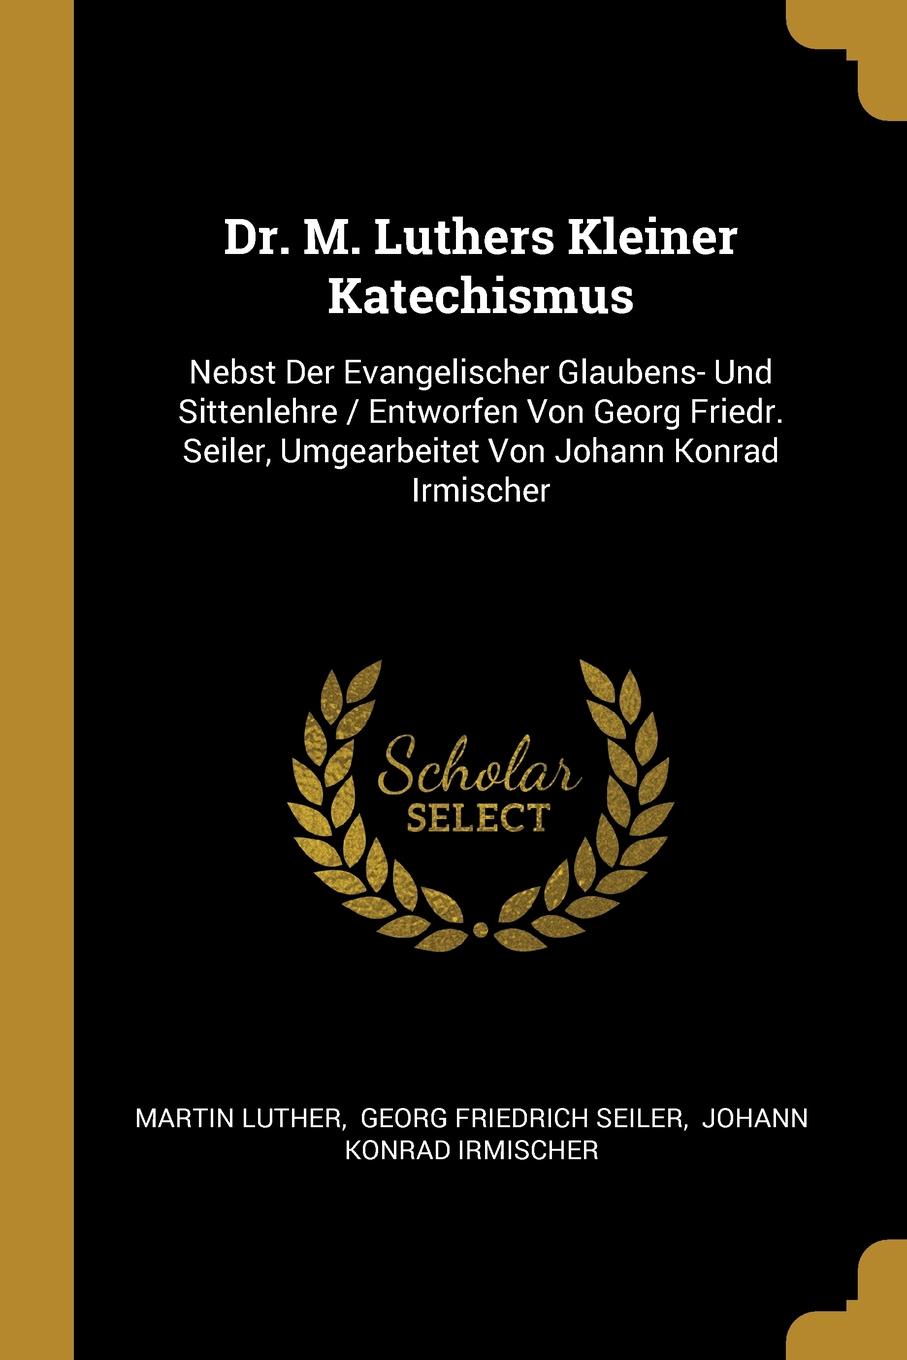 Dr. M. Luthers Kleiner Katechismus. Nebst Der Evangelischer Glaubens- Und Sittenlehre / Entworfen Von Georg Friedr. Seiler, Umgearbeitet Von Johann Konrad Irmischer